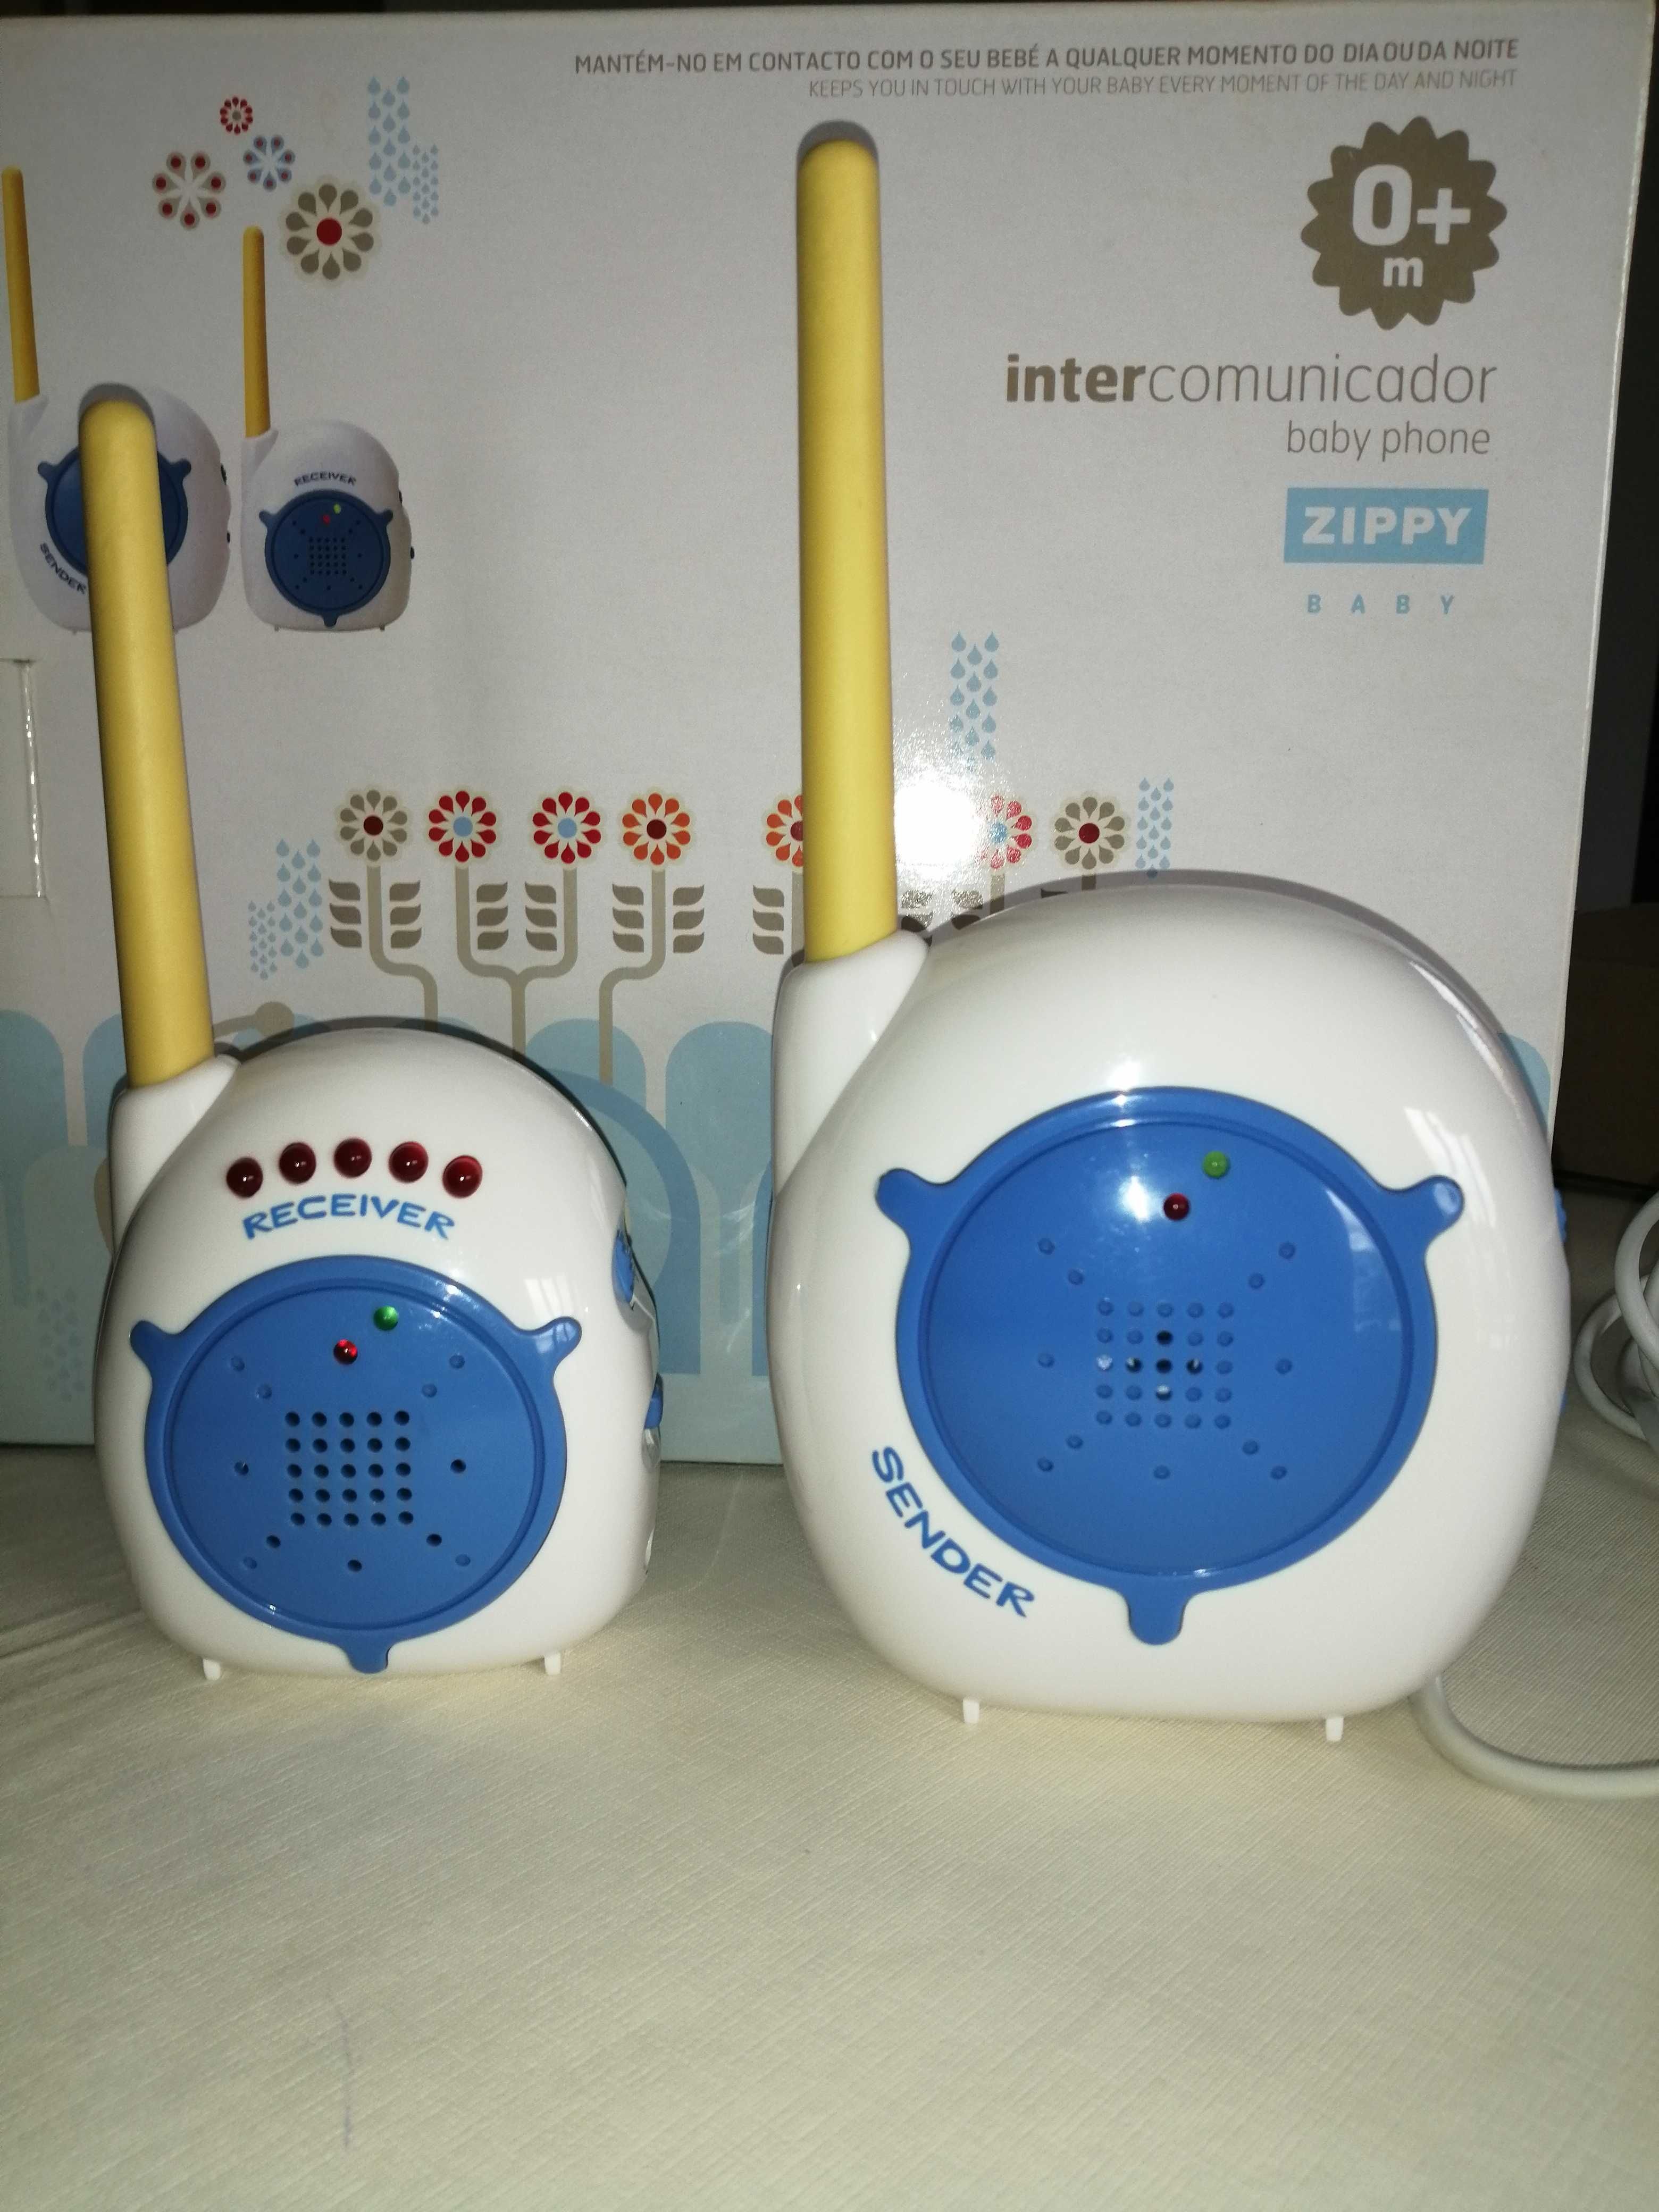 Intercomunicador - Baby phone